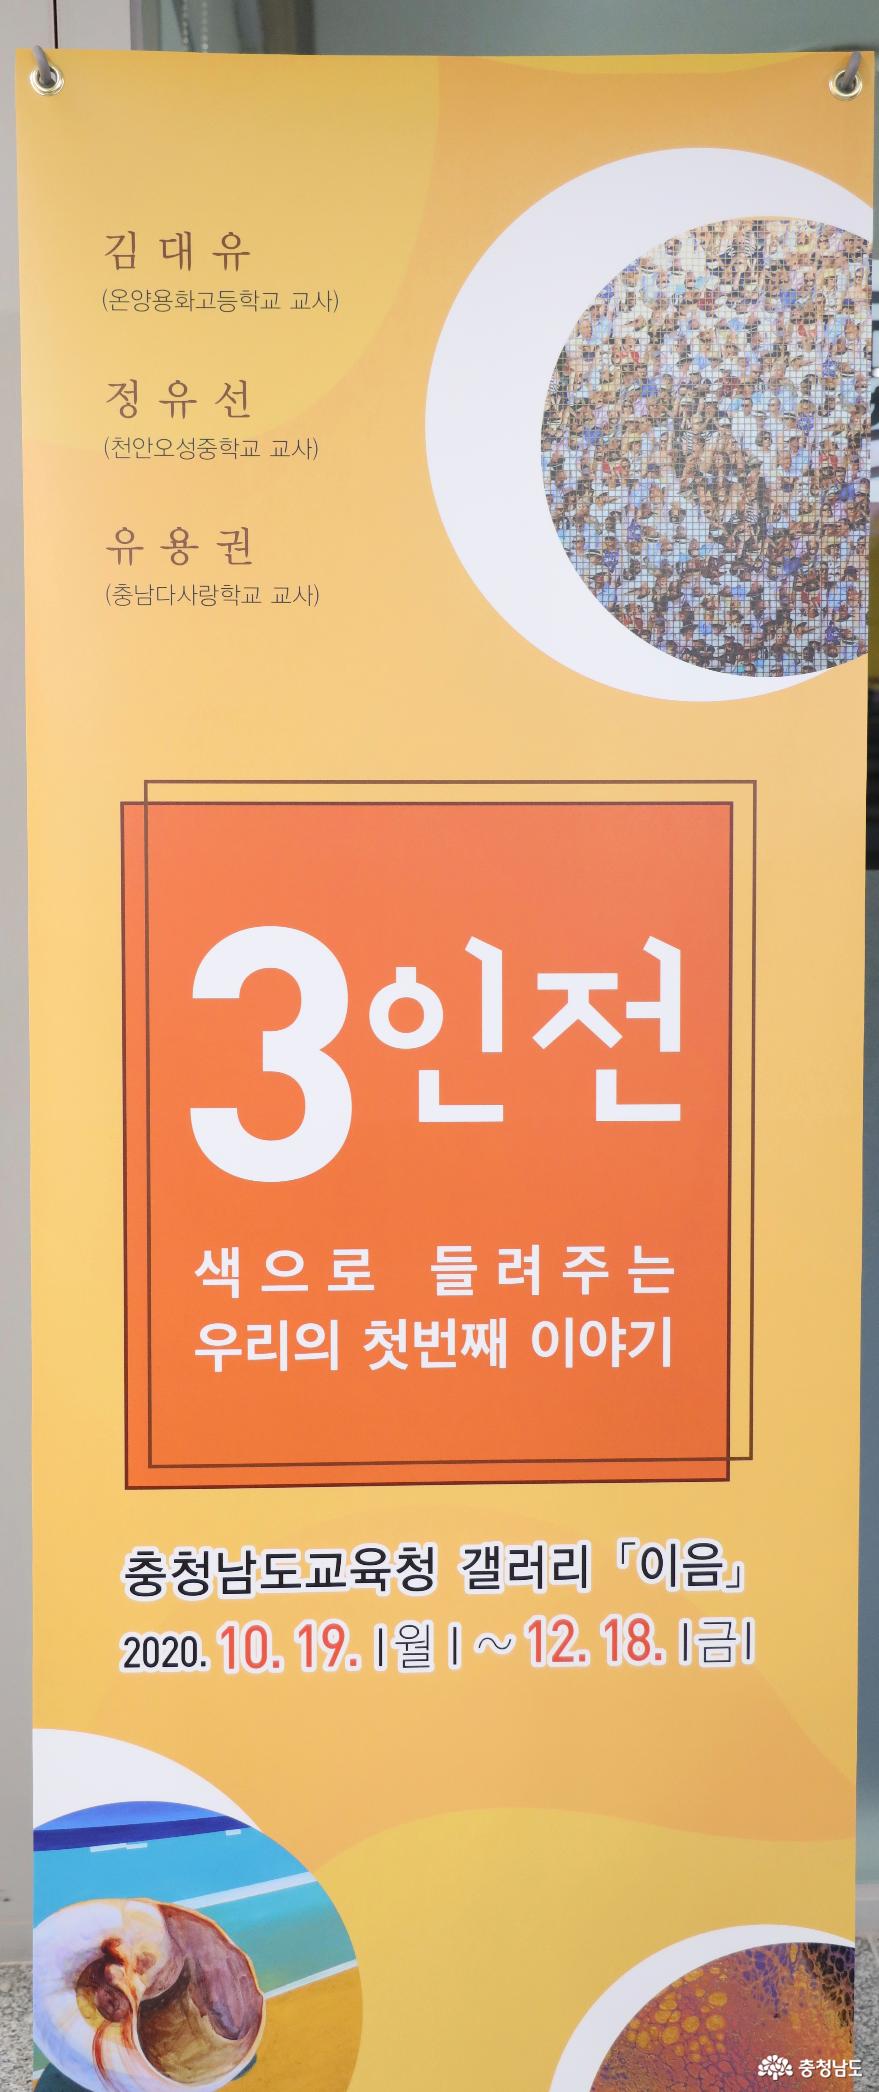 충남교육청갤러리이음다섯번째전시3인전개최 1